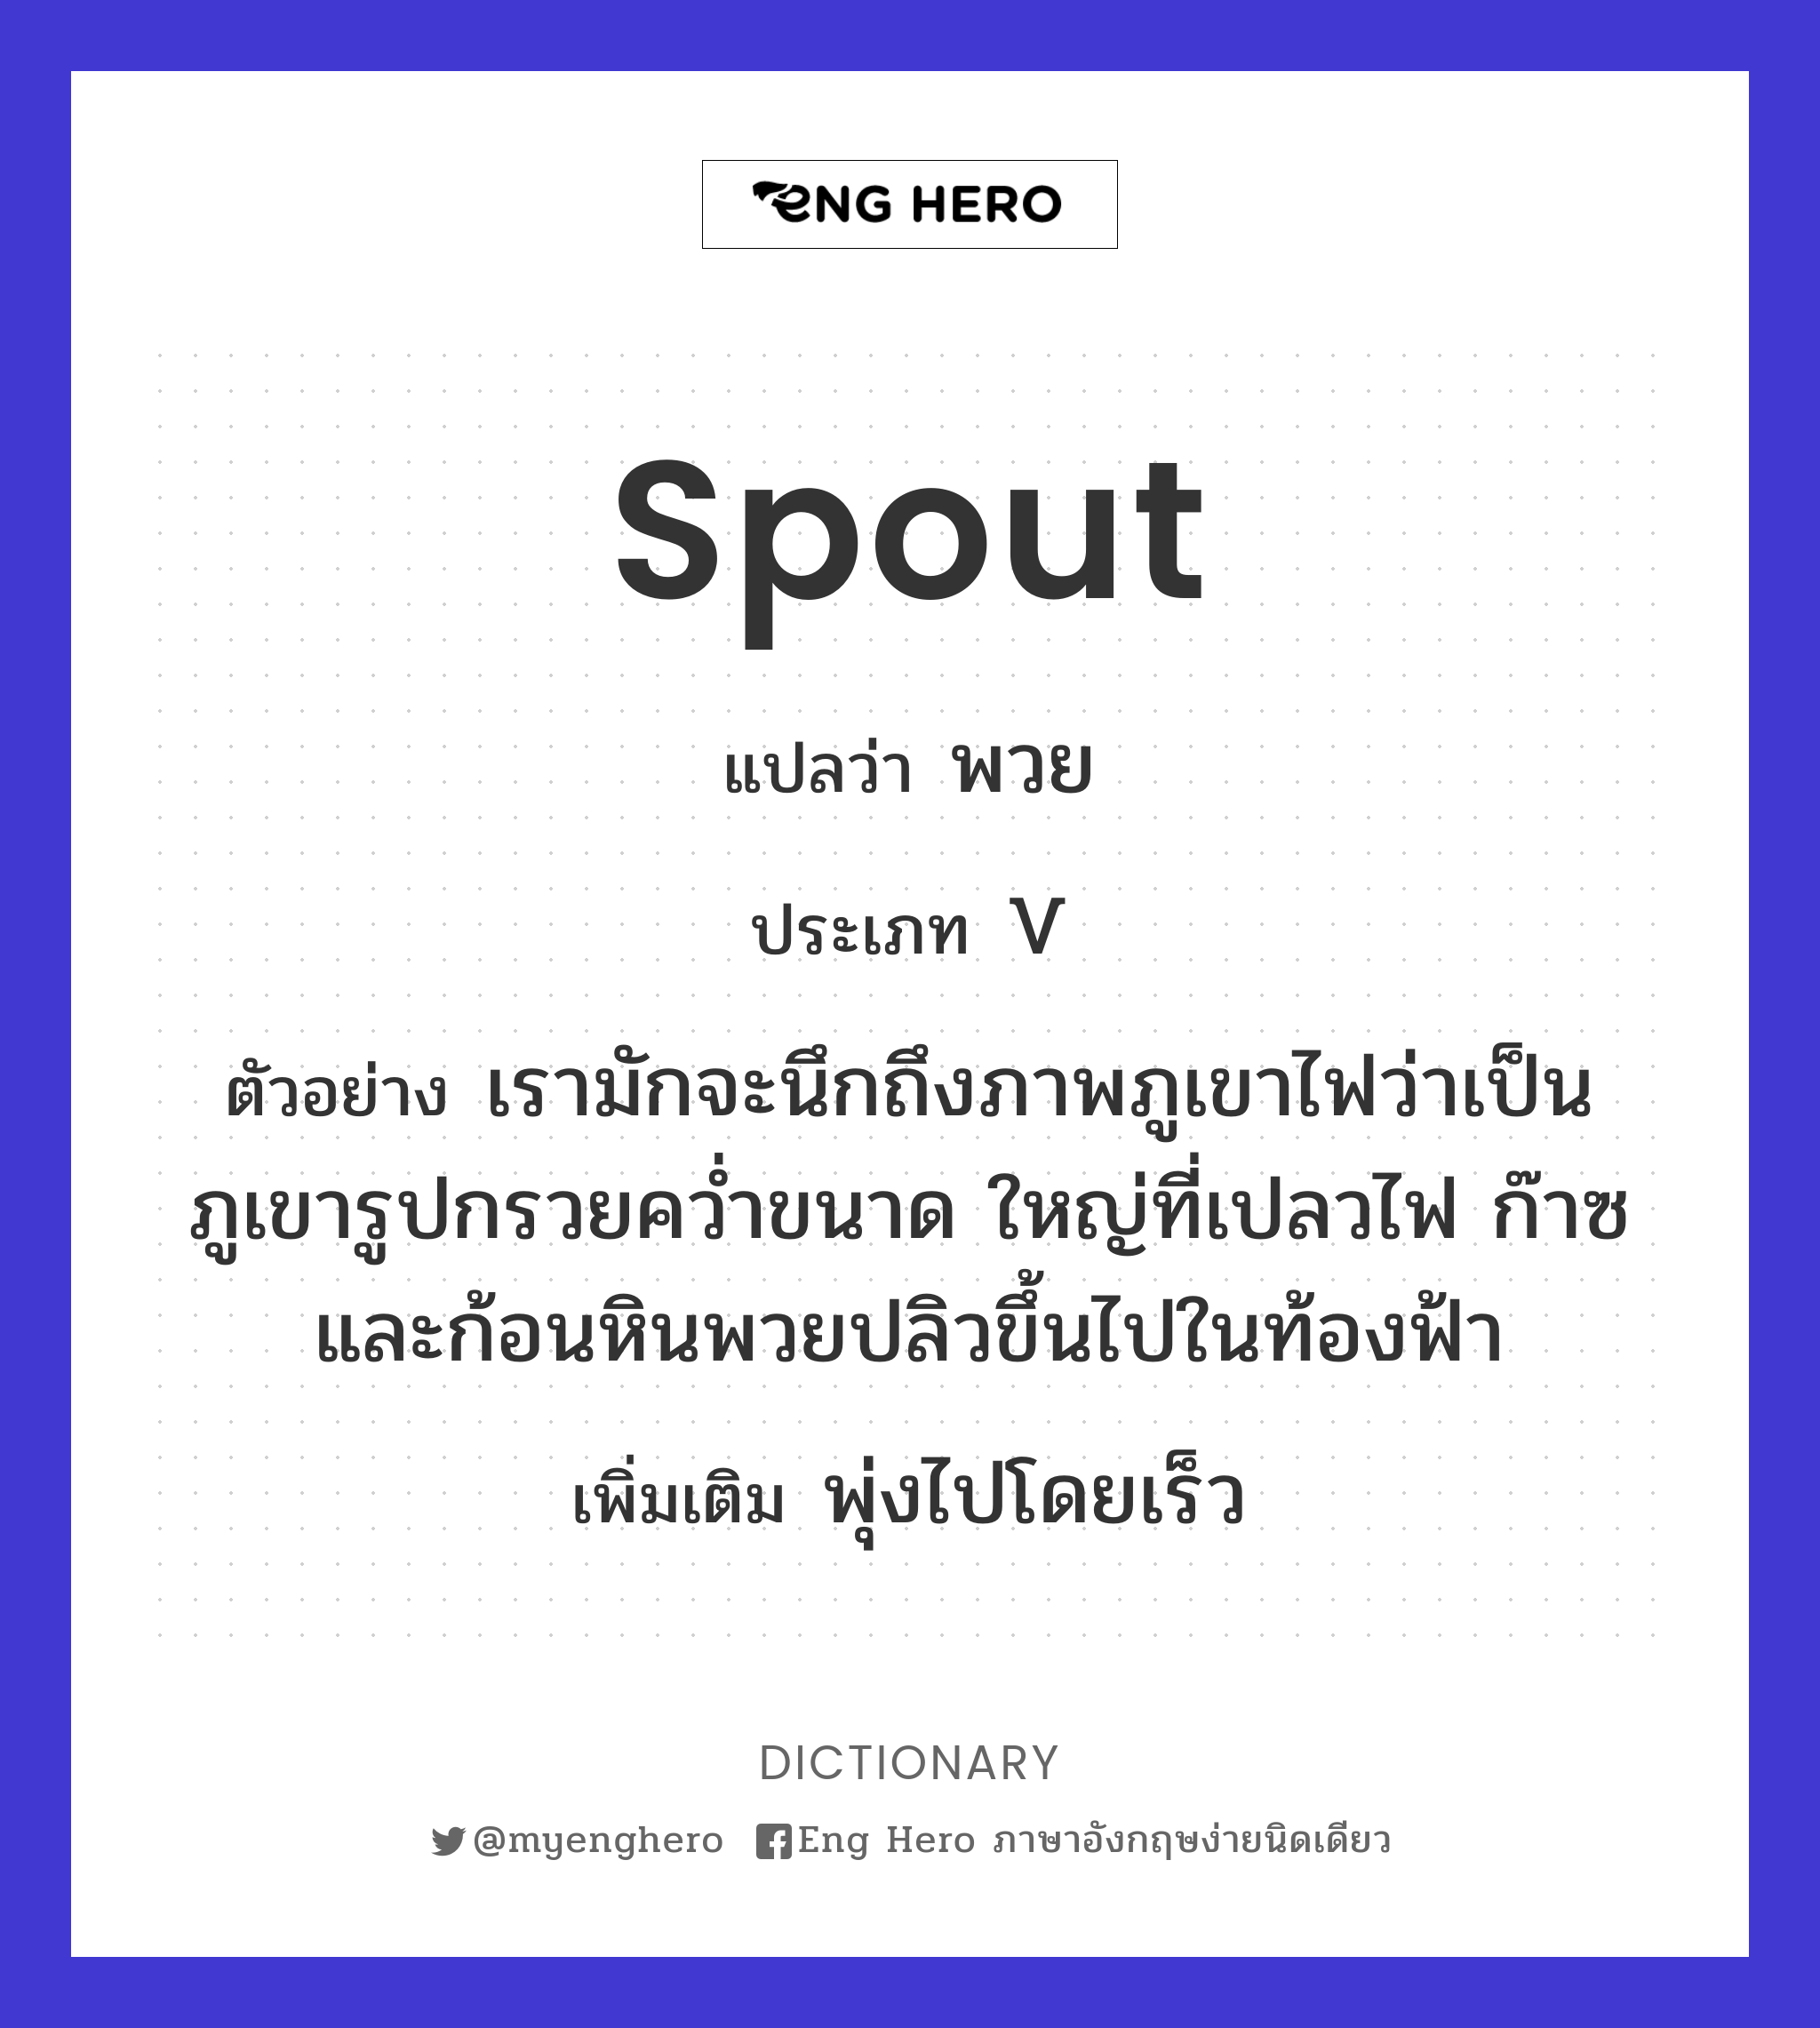 spout